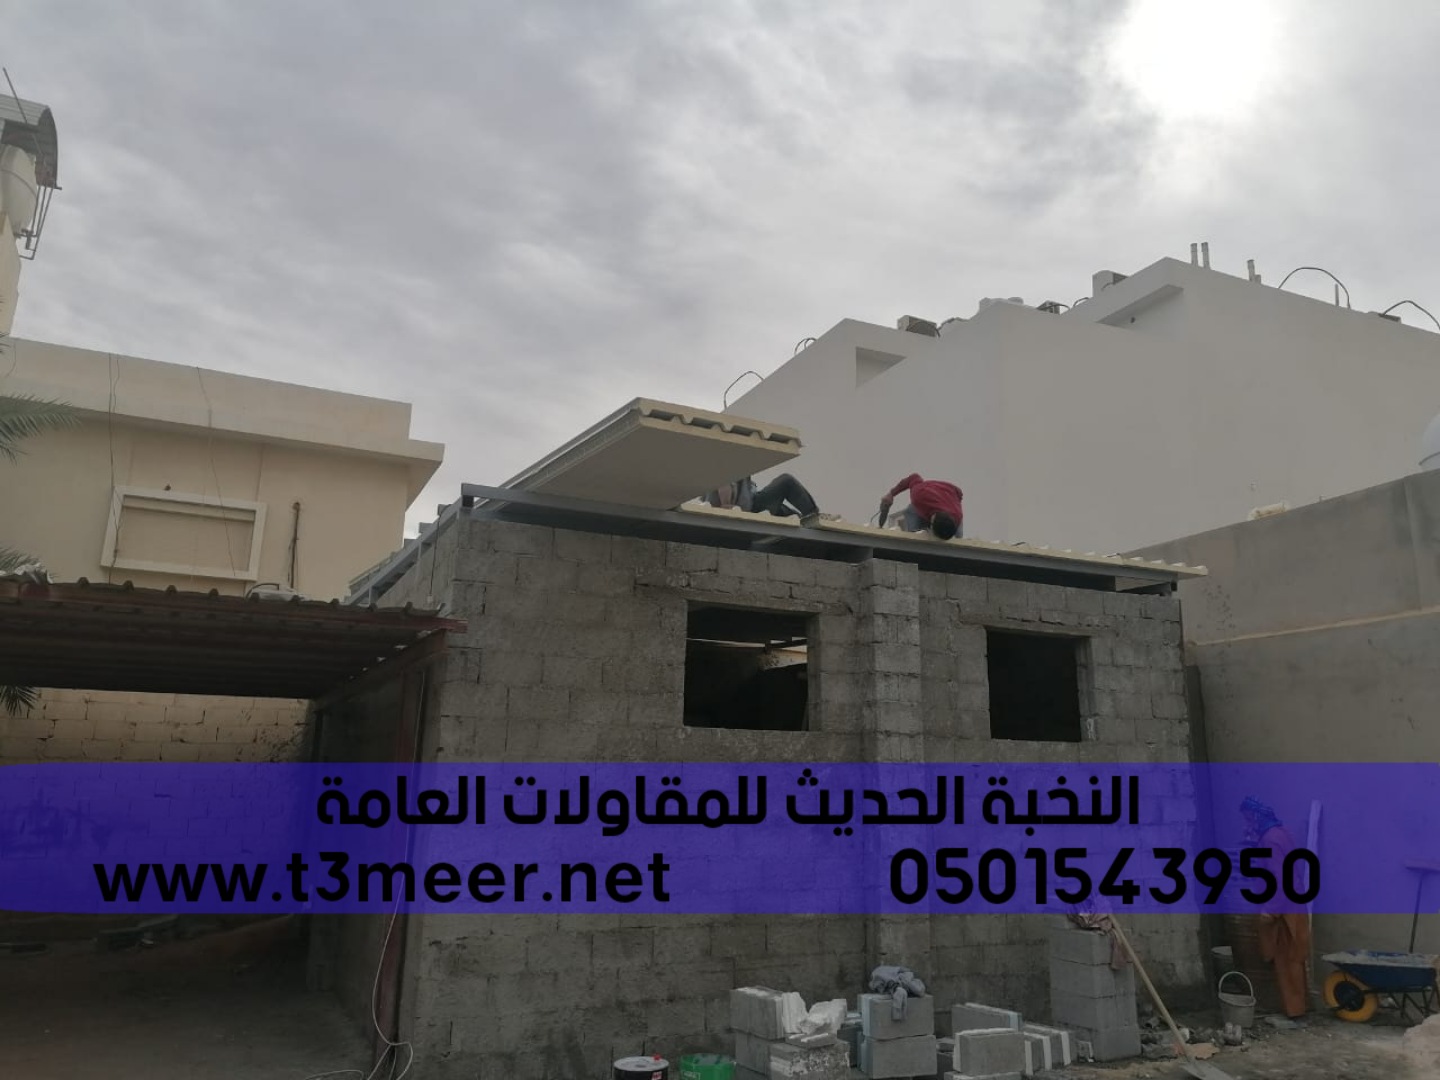 مقاول بناء ملحق في الرياض جدة الشرقية, 0501543950  P_2546w32ot5